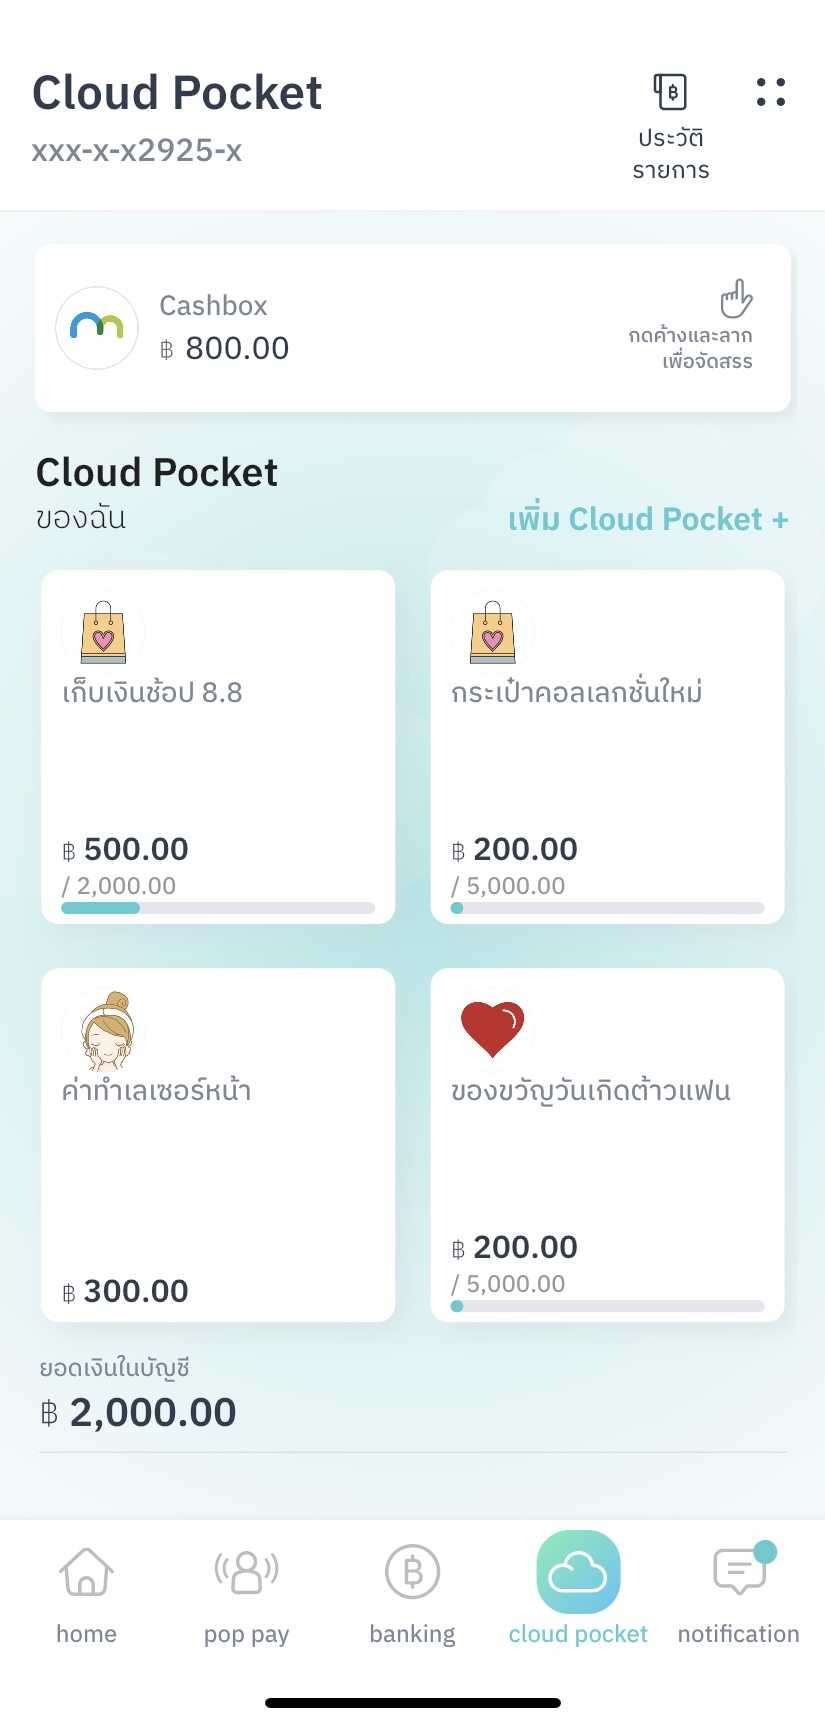 Cloud Pocket